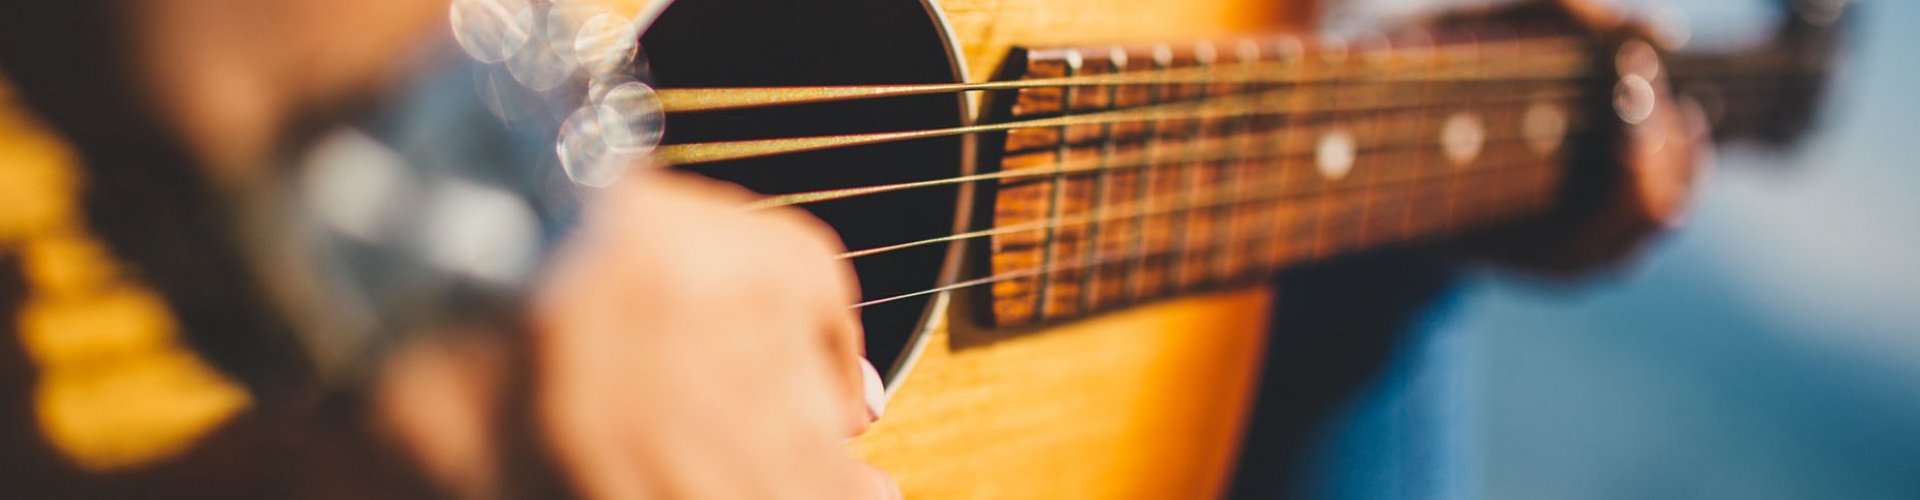 Geestig Strikt verdrievoudigen Online gitaarles voor leerkrachten